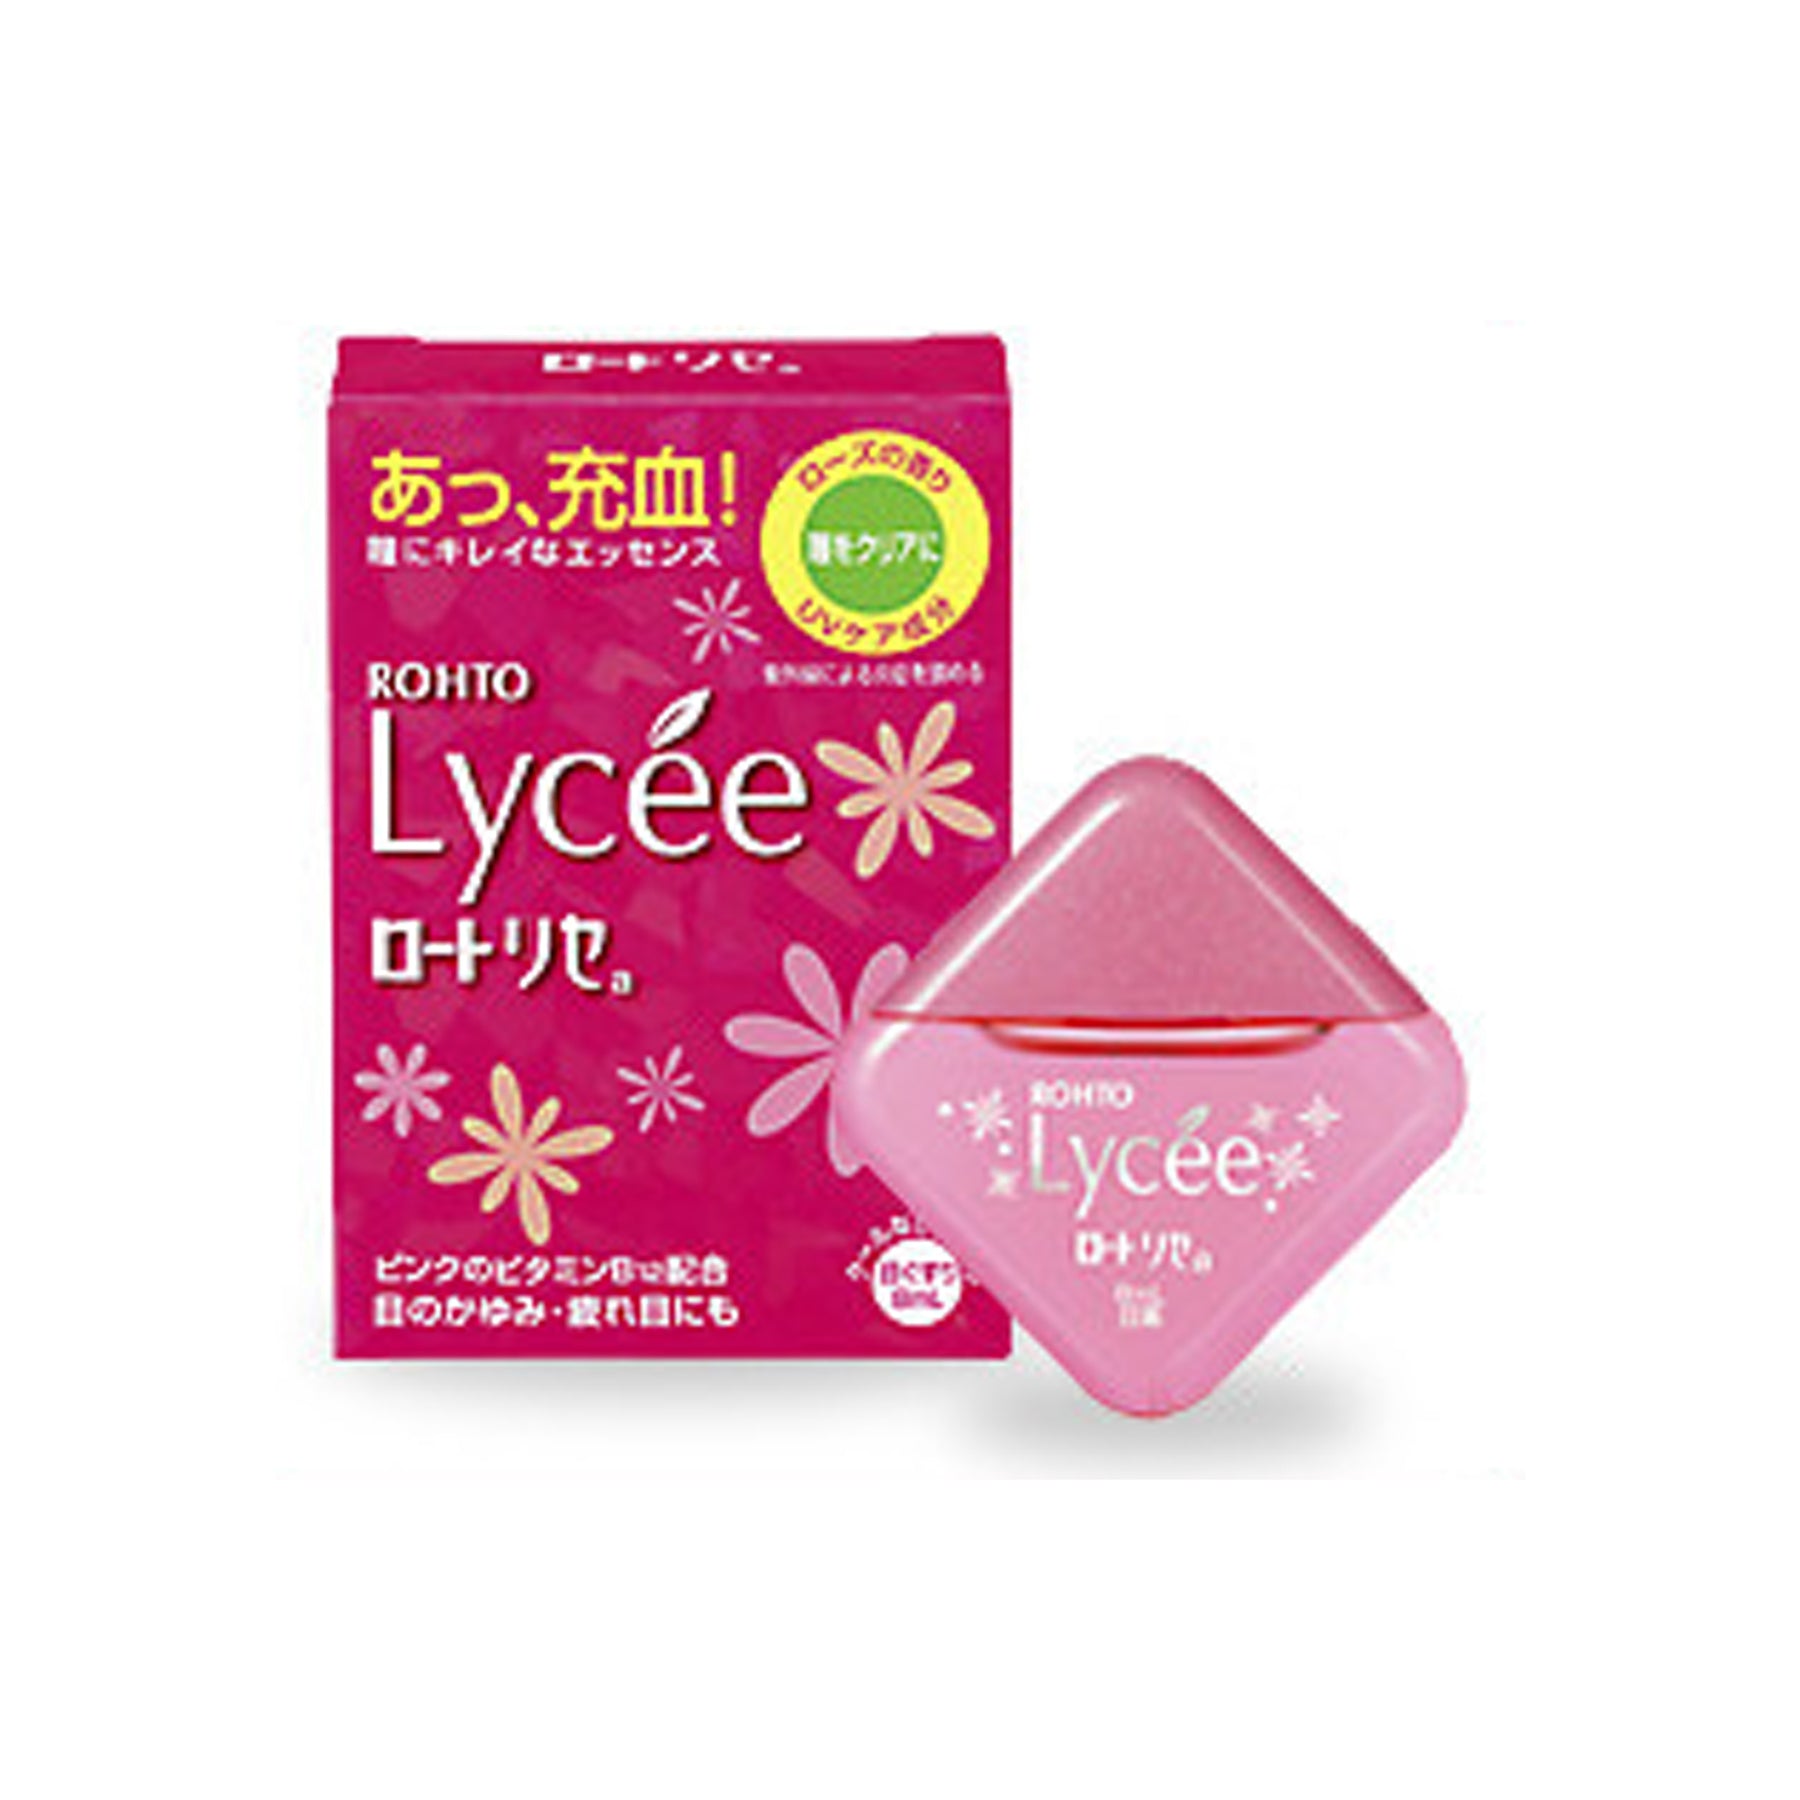 樂敦 Lycee Eyedrop 7ml